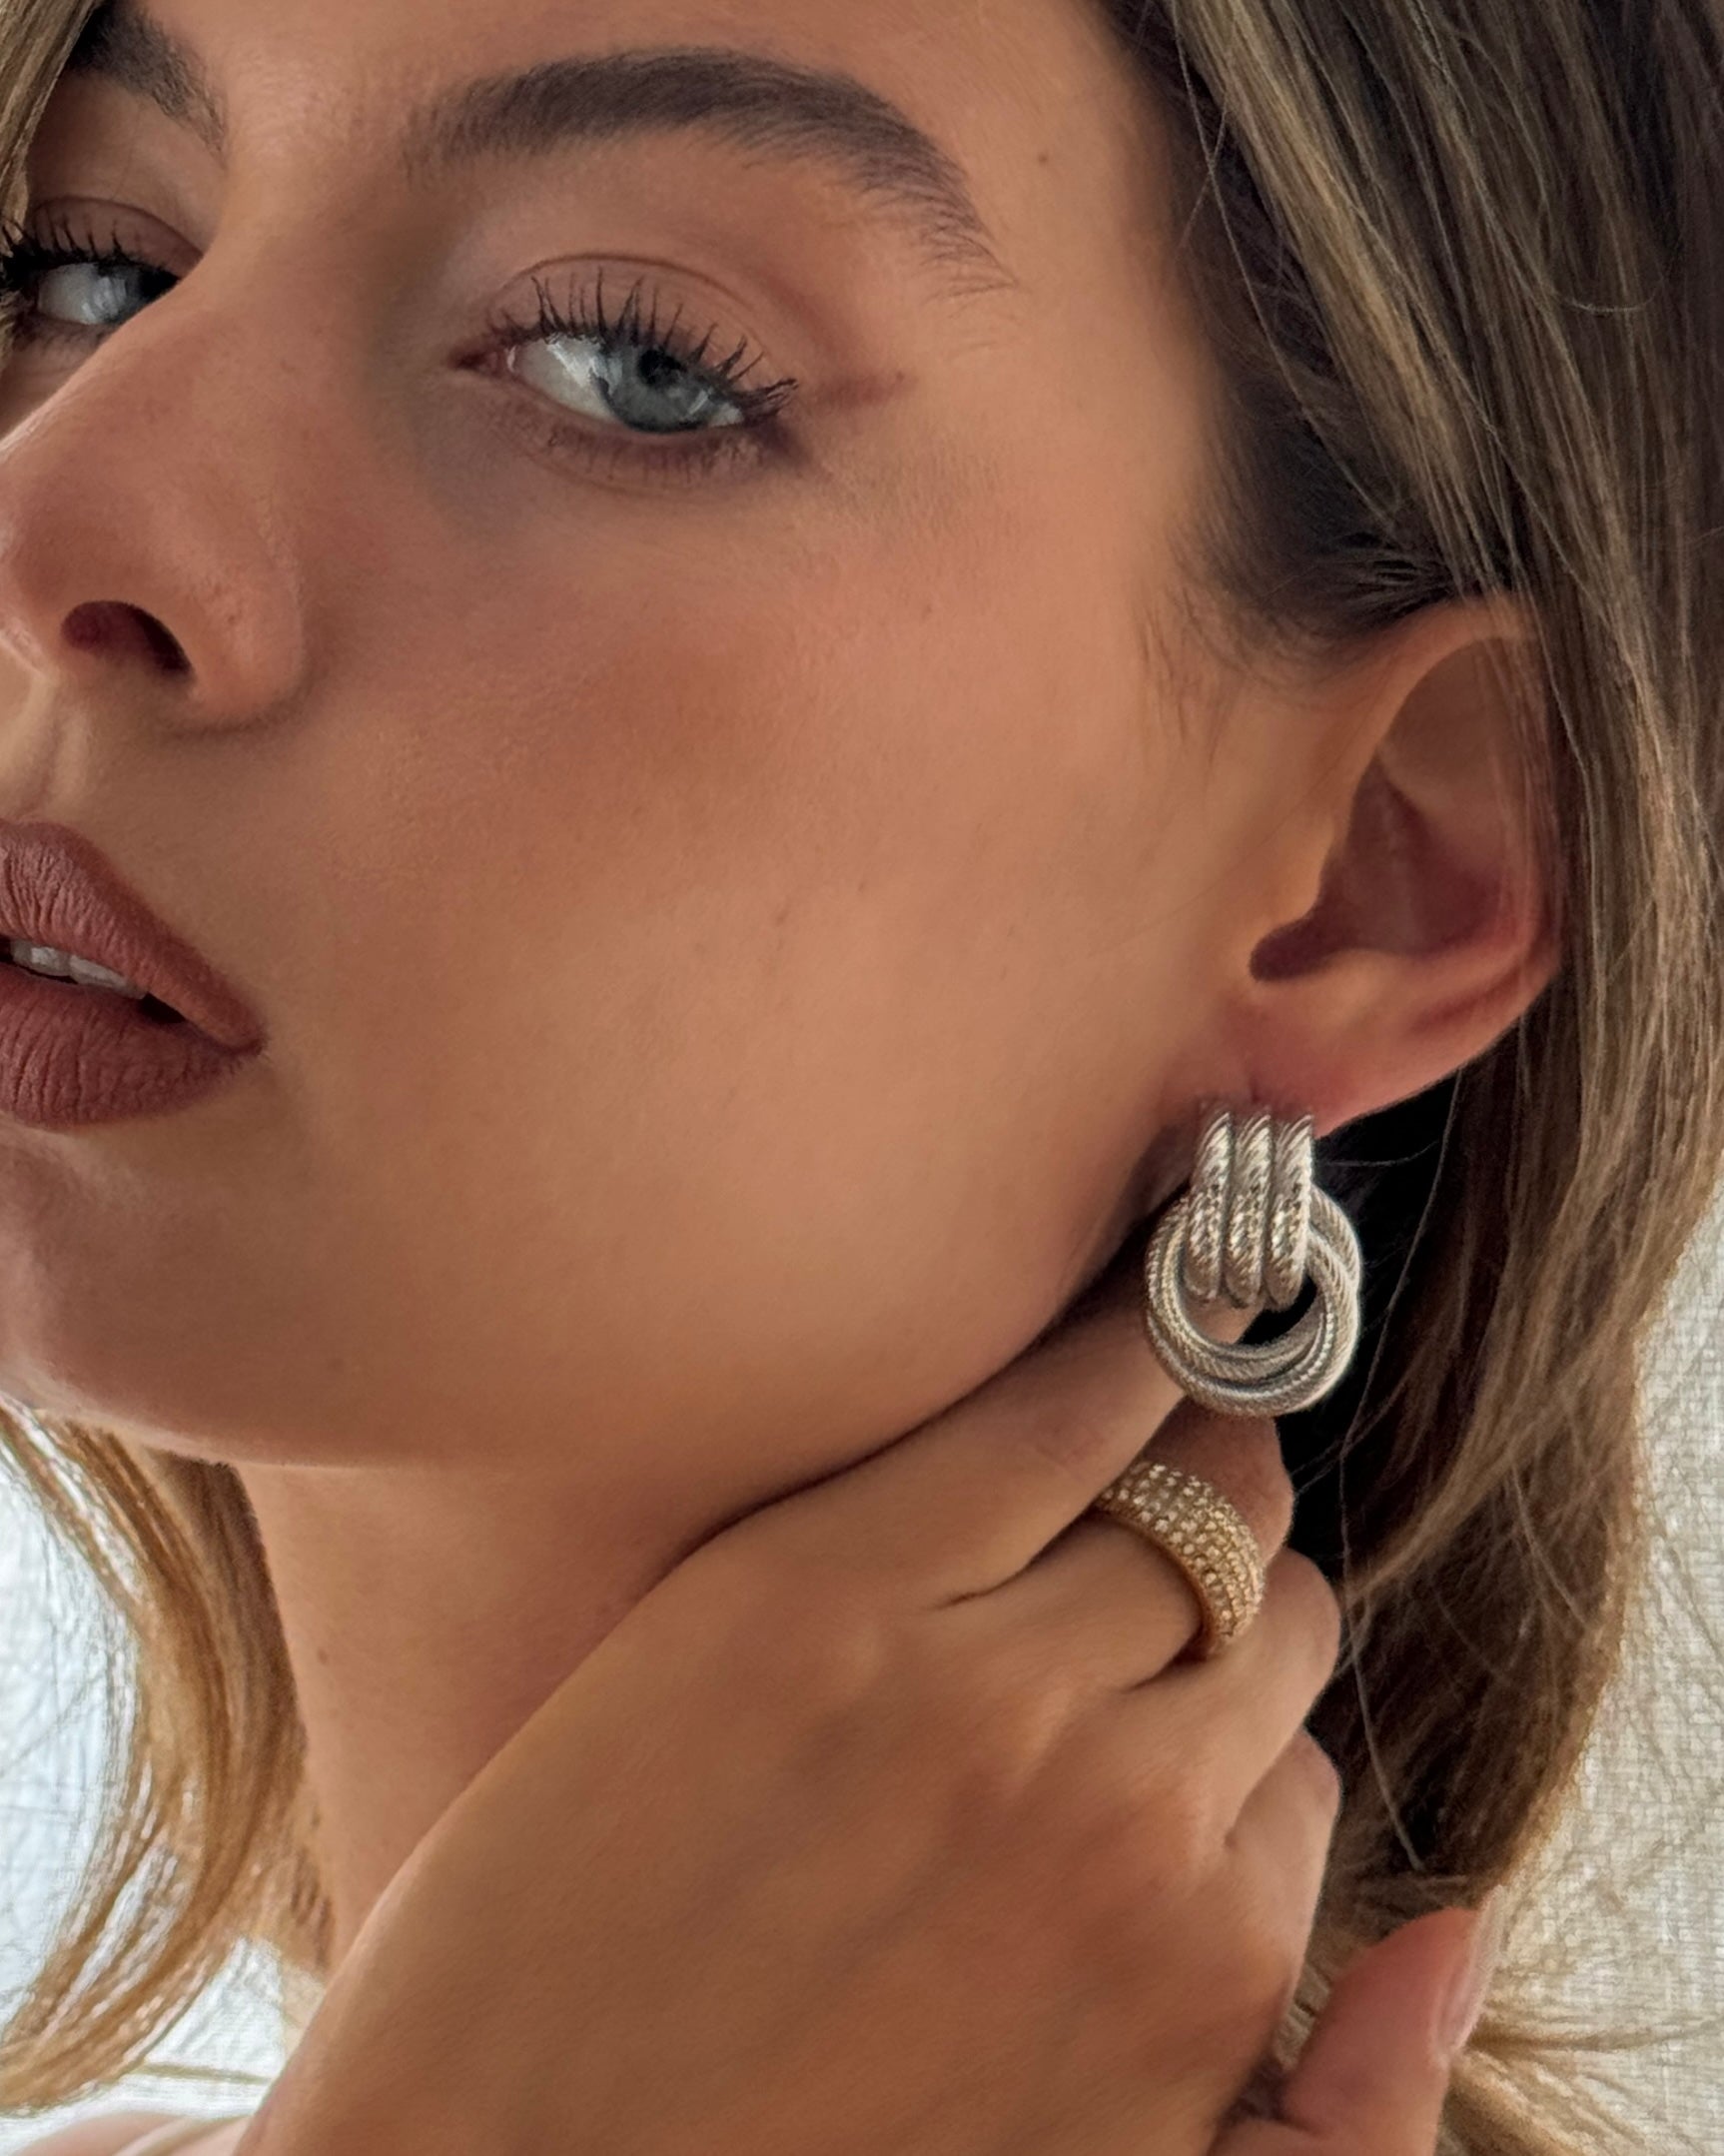 Knot Earrings - Silver